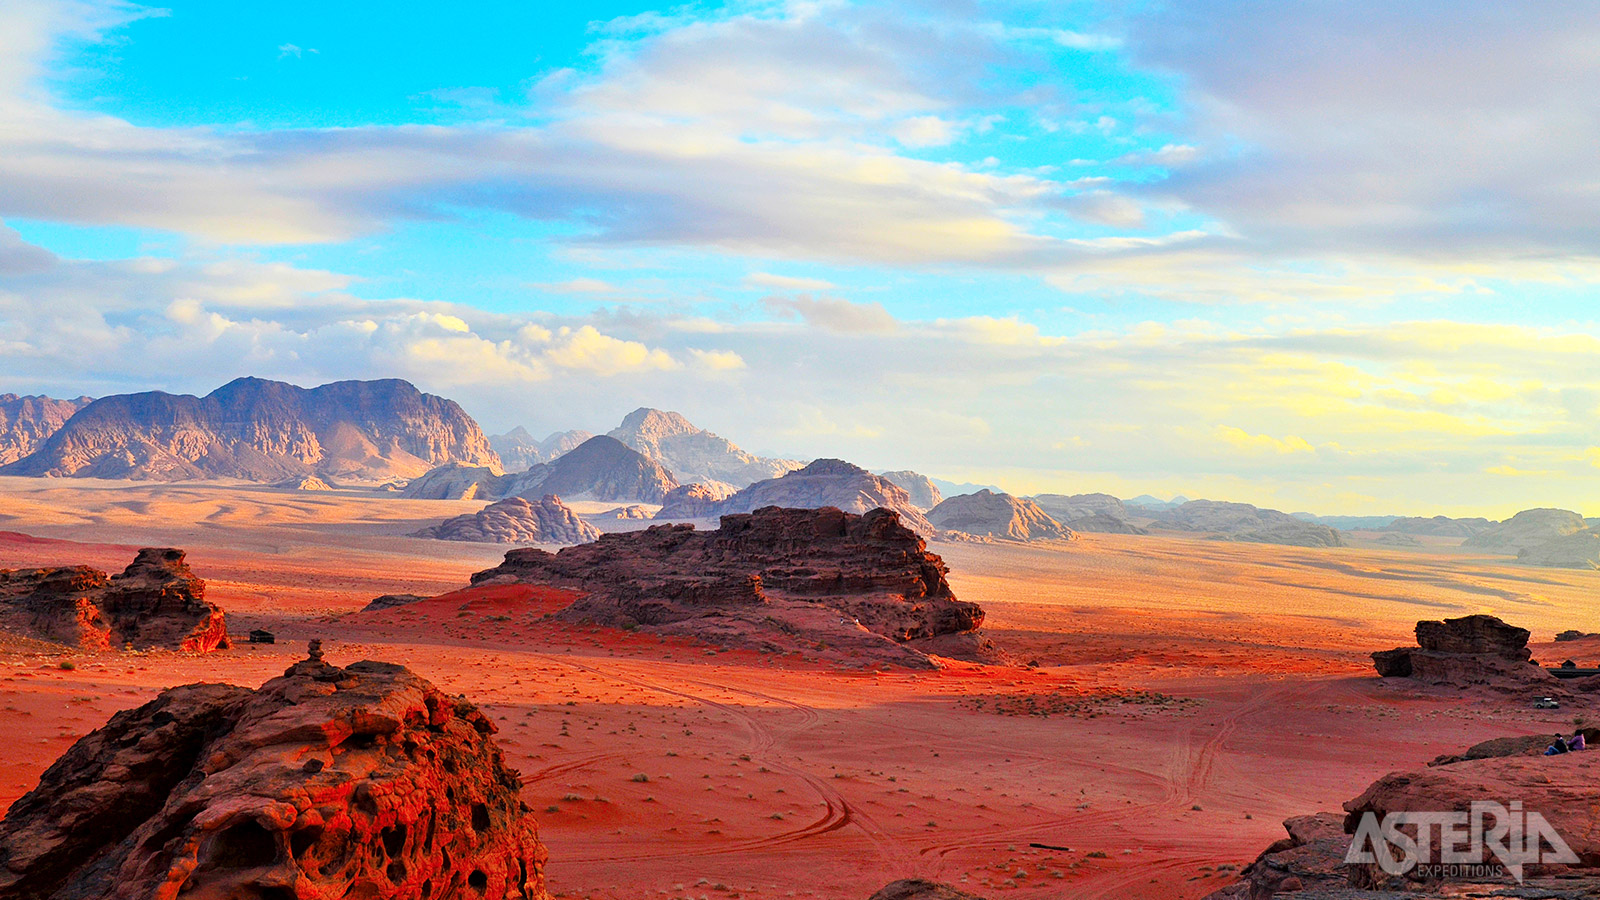 Treed in de voetsporen van Lawrence of Arabia tijdens een jeeptocht door de woestijn